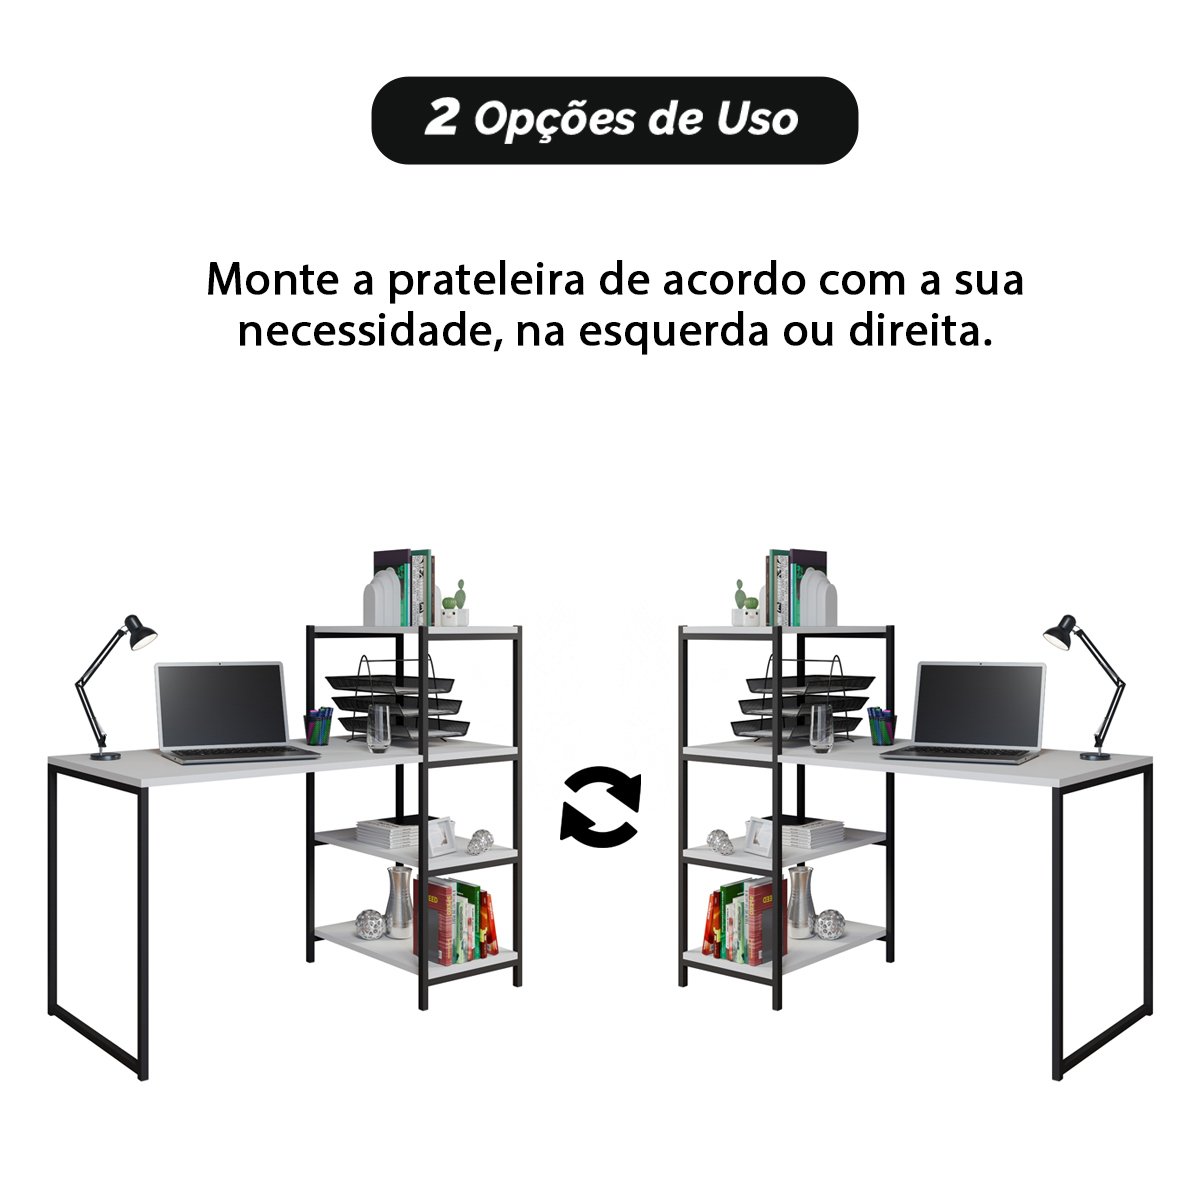 Escrivaninha Industrial Home Office Estrutura em Aço com Prateleiras - 7